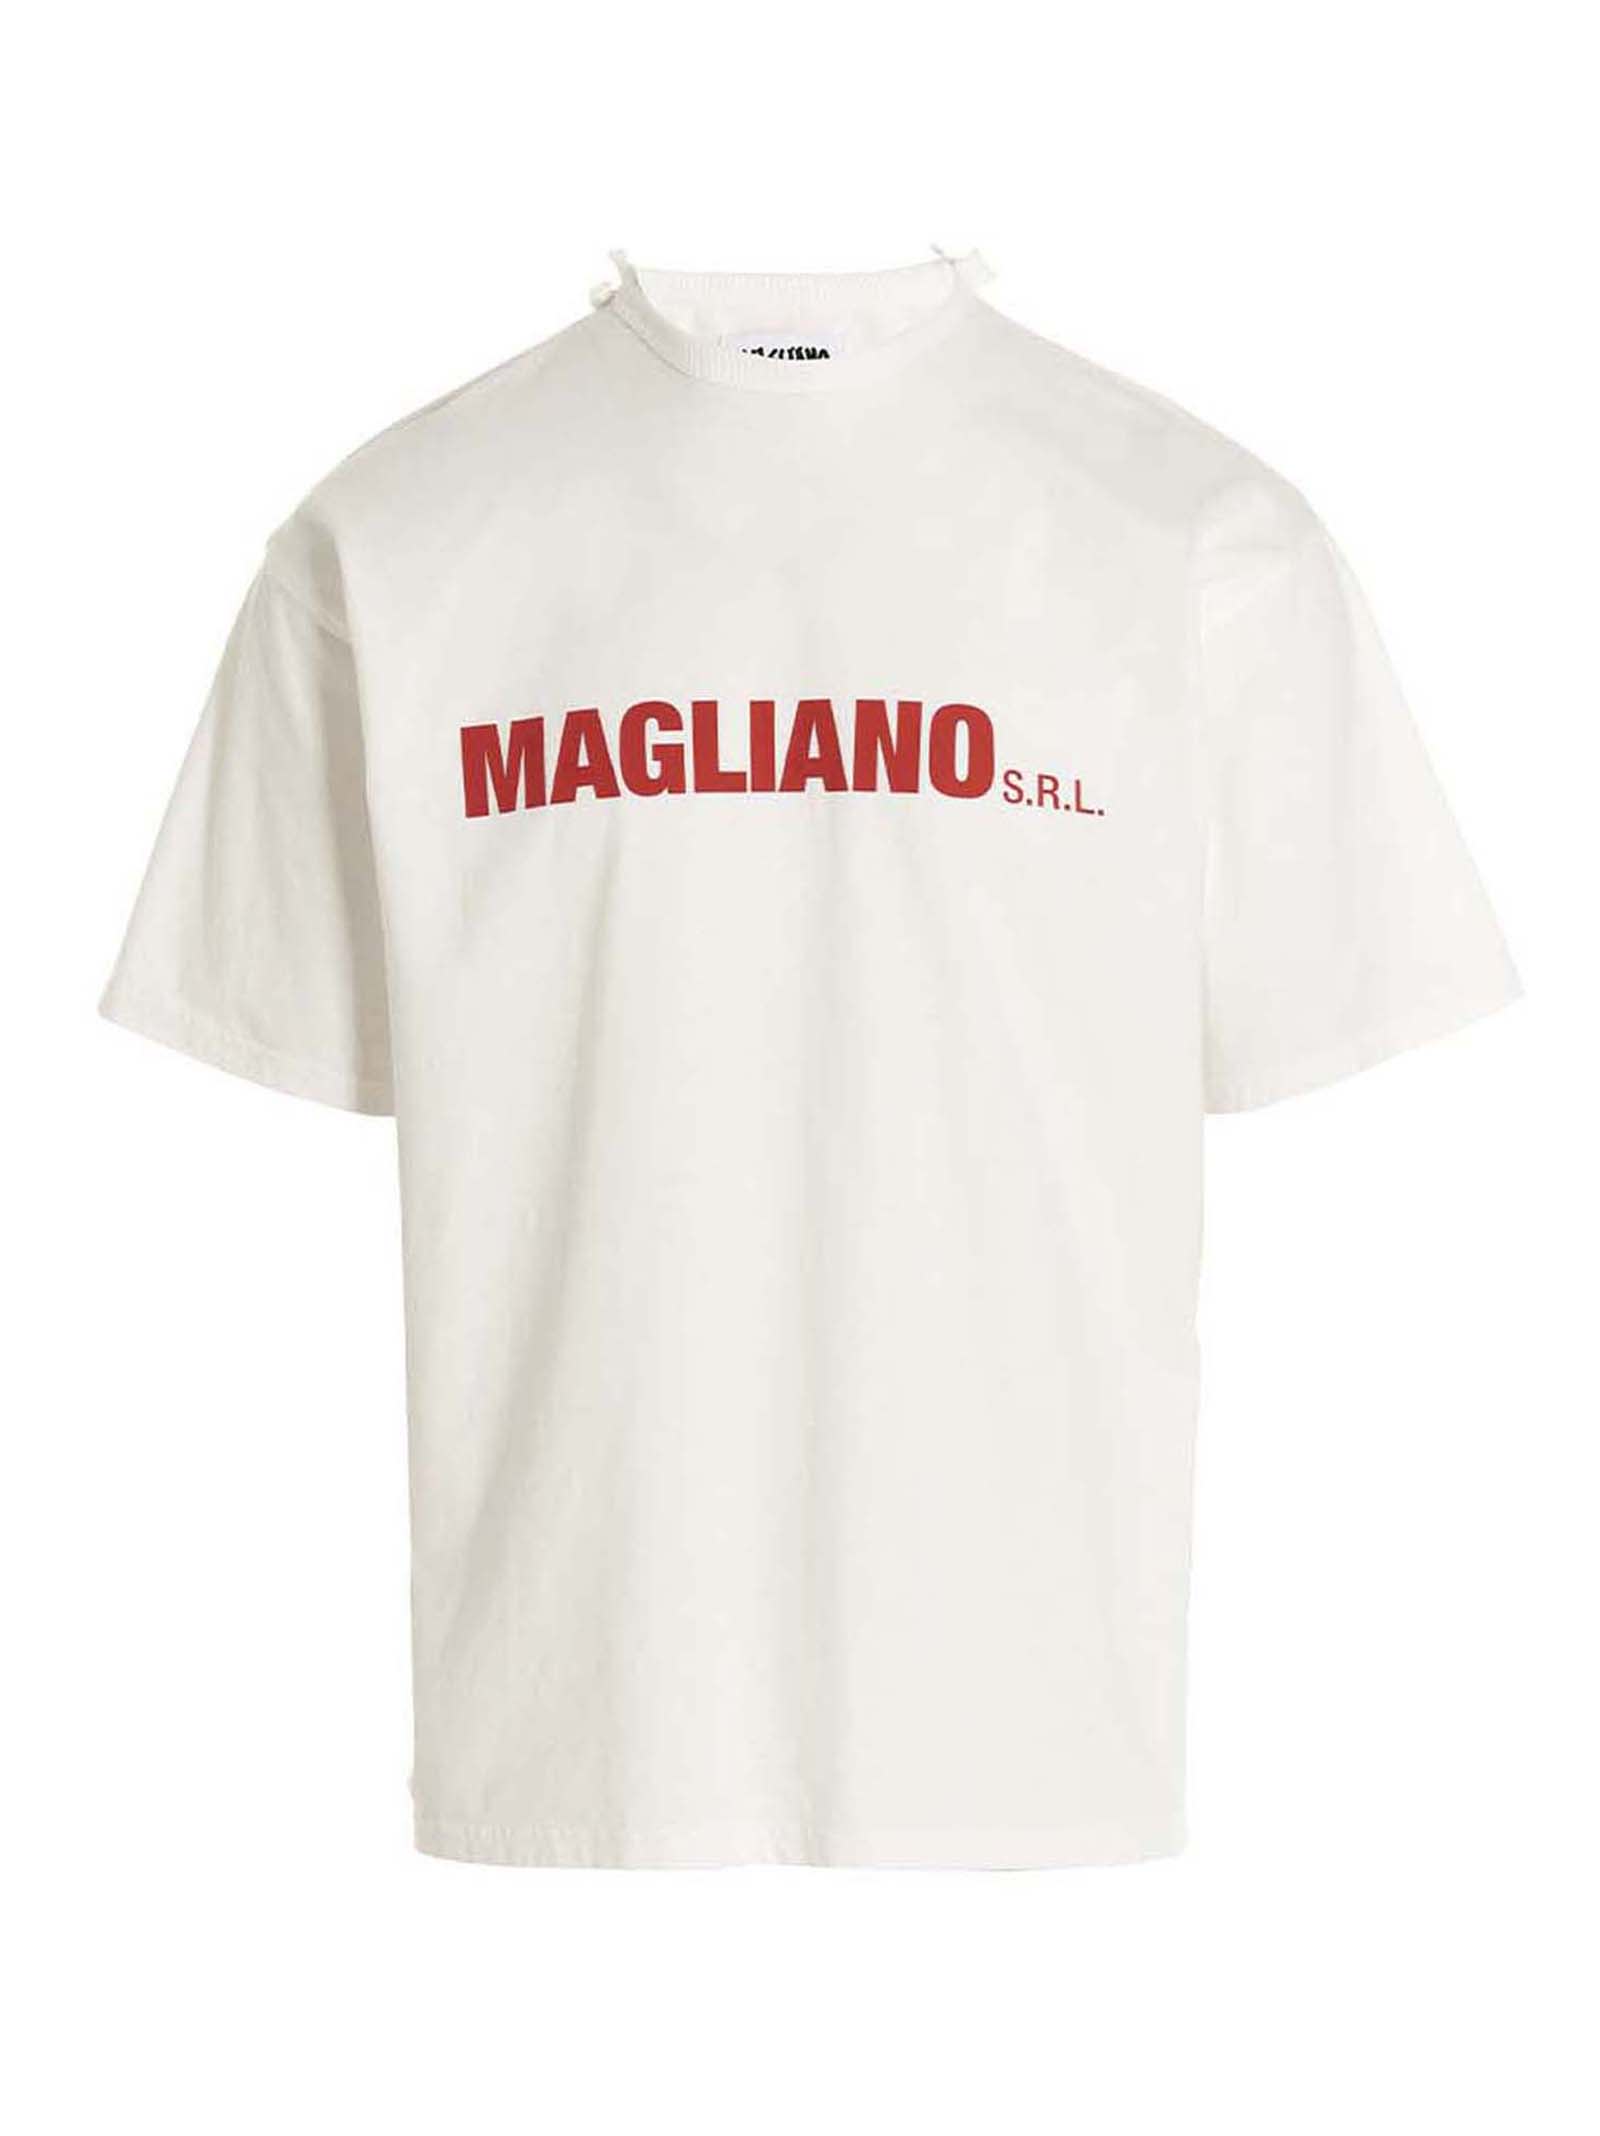 MAGLIANO T-SHIRT MAGLIANO SRL